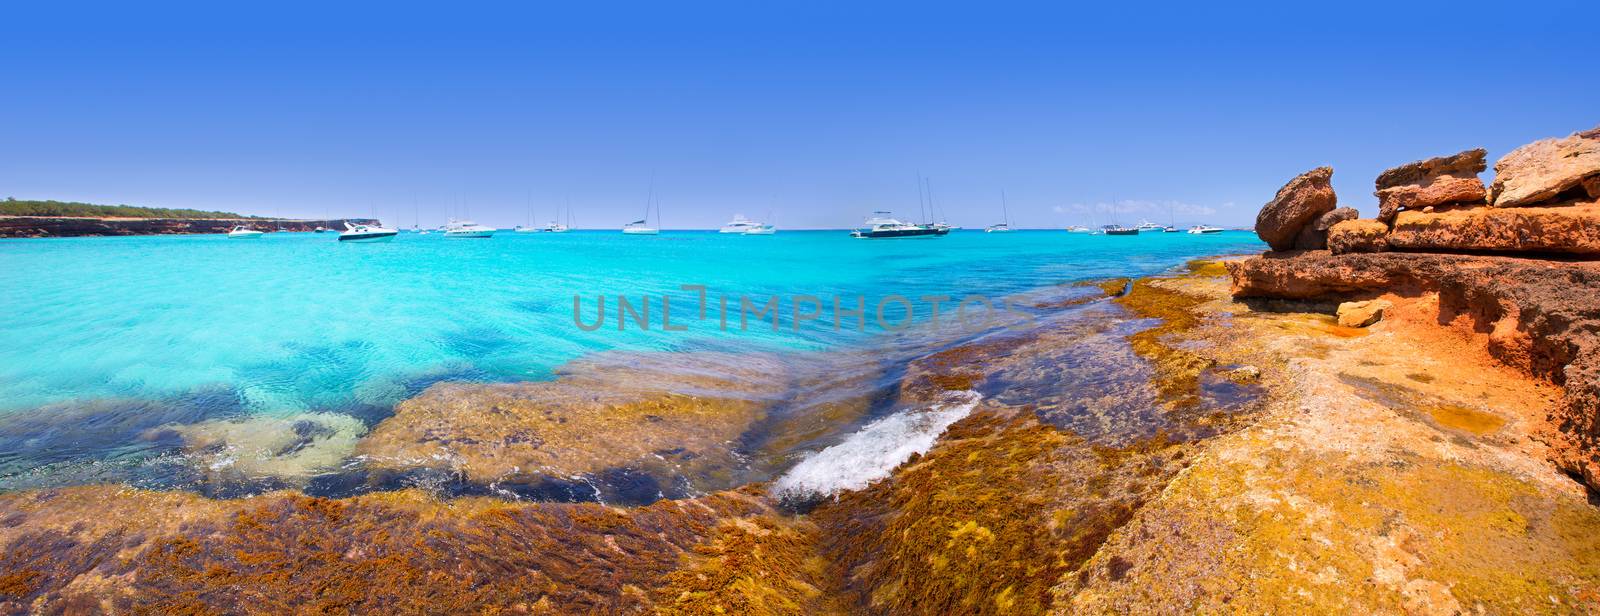 Formentera panoramic Cala Saona beach Balearic Islands by lunamarina